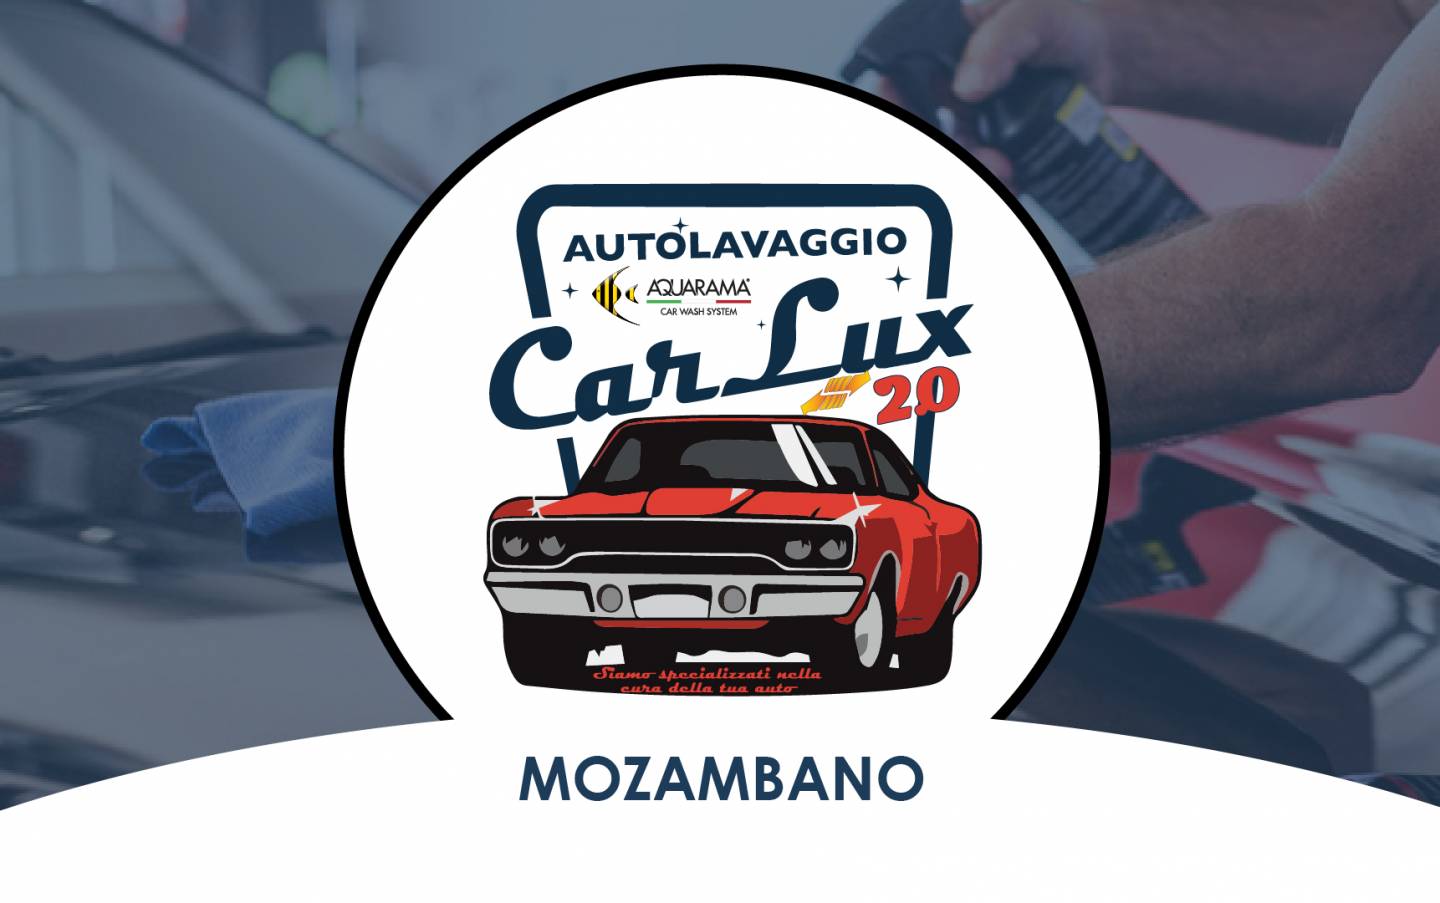 Carlux - Monzambano